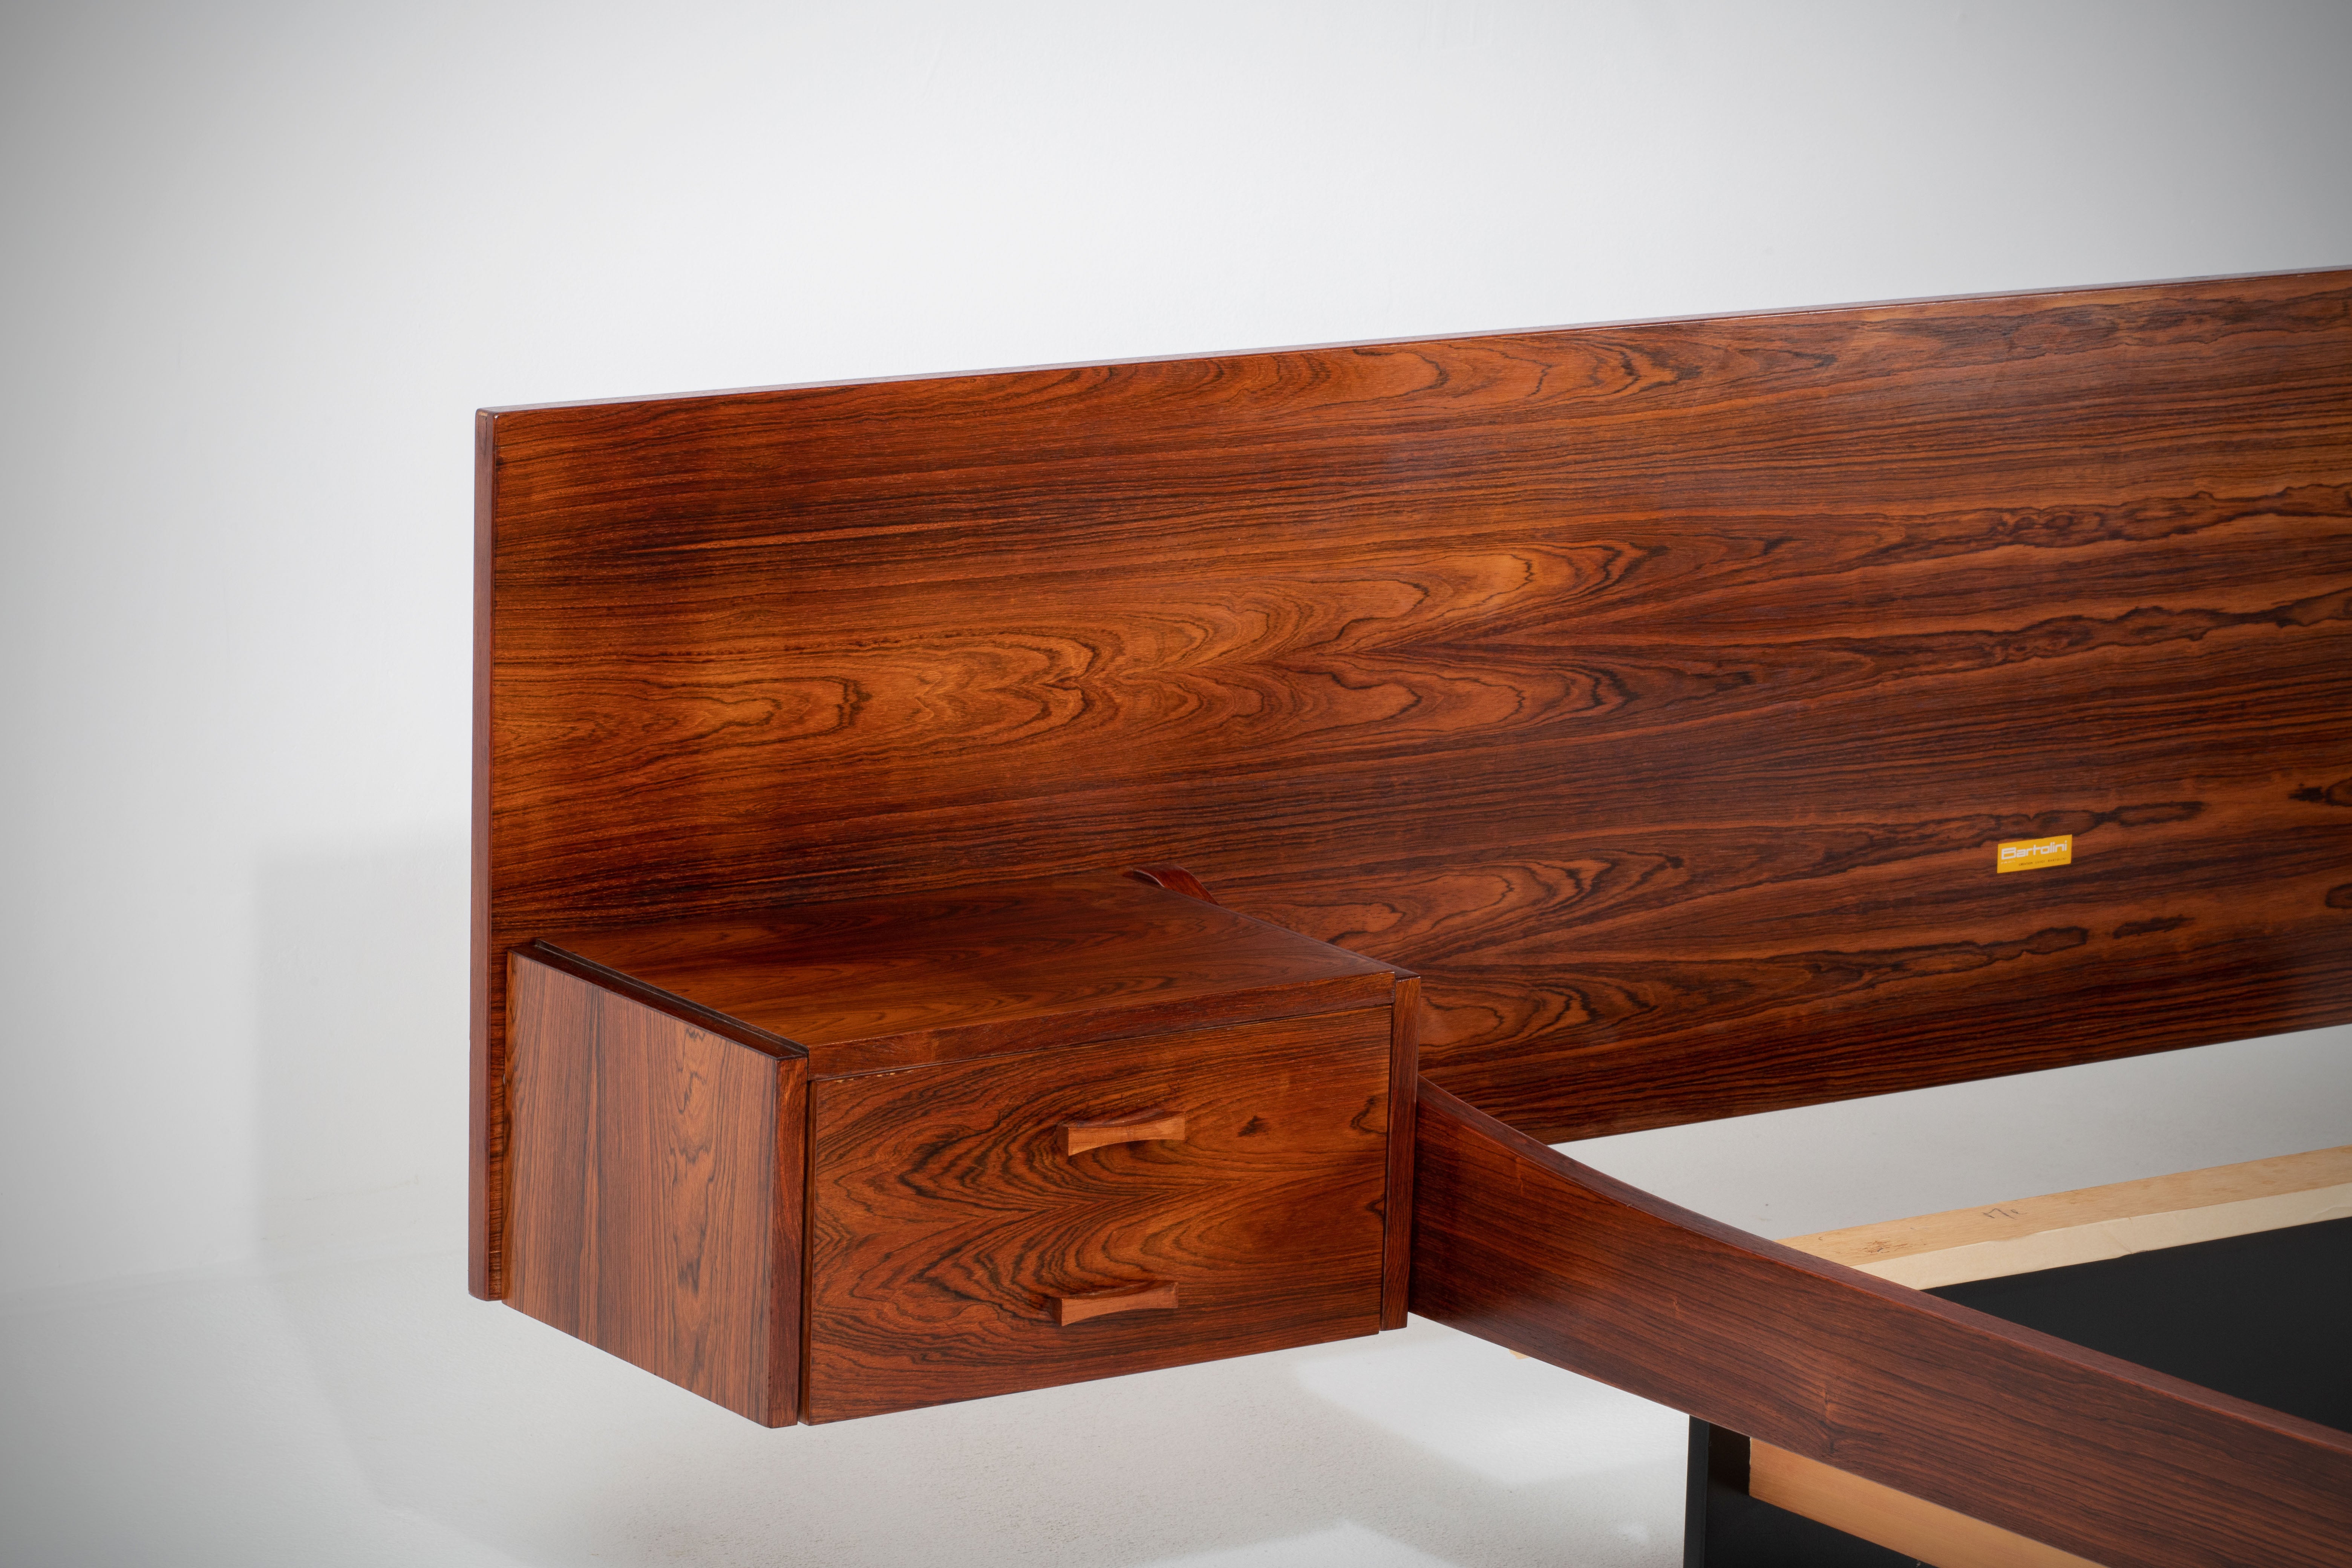 Luigi Bartolini, un influent designer de meubles italien, a créé un chef-d'œuvre intemporel dans les années 1960 avec un superbe cadre de lit et une tête de lit en bois de rose. Le lit comporte un nid de tables flottant distinctif, mettant en valeur